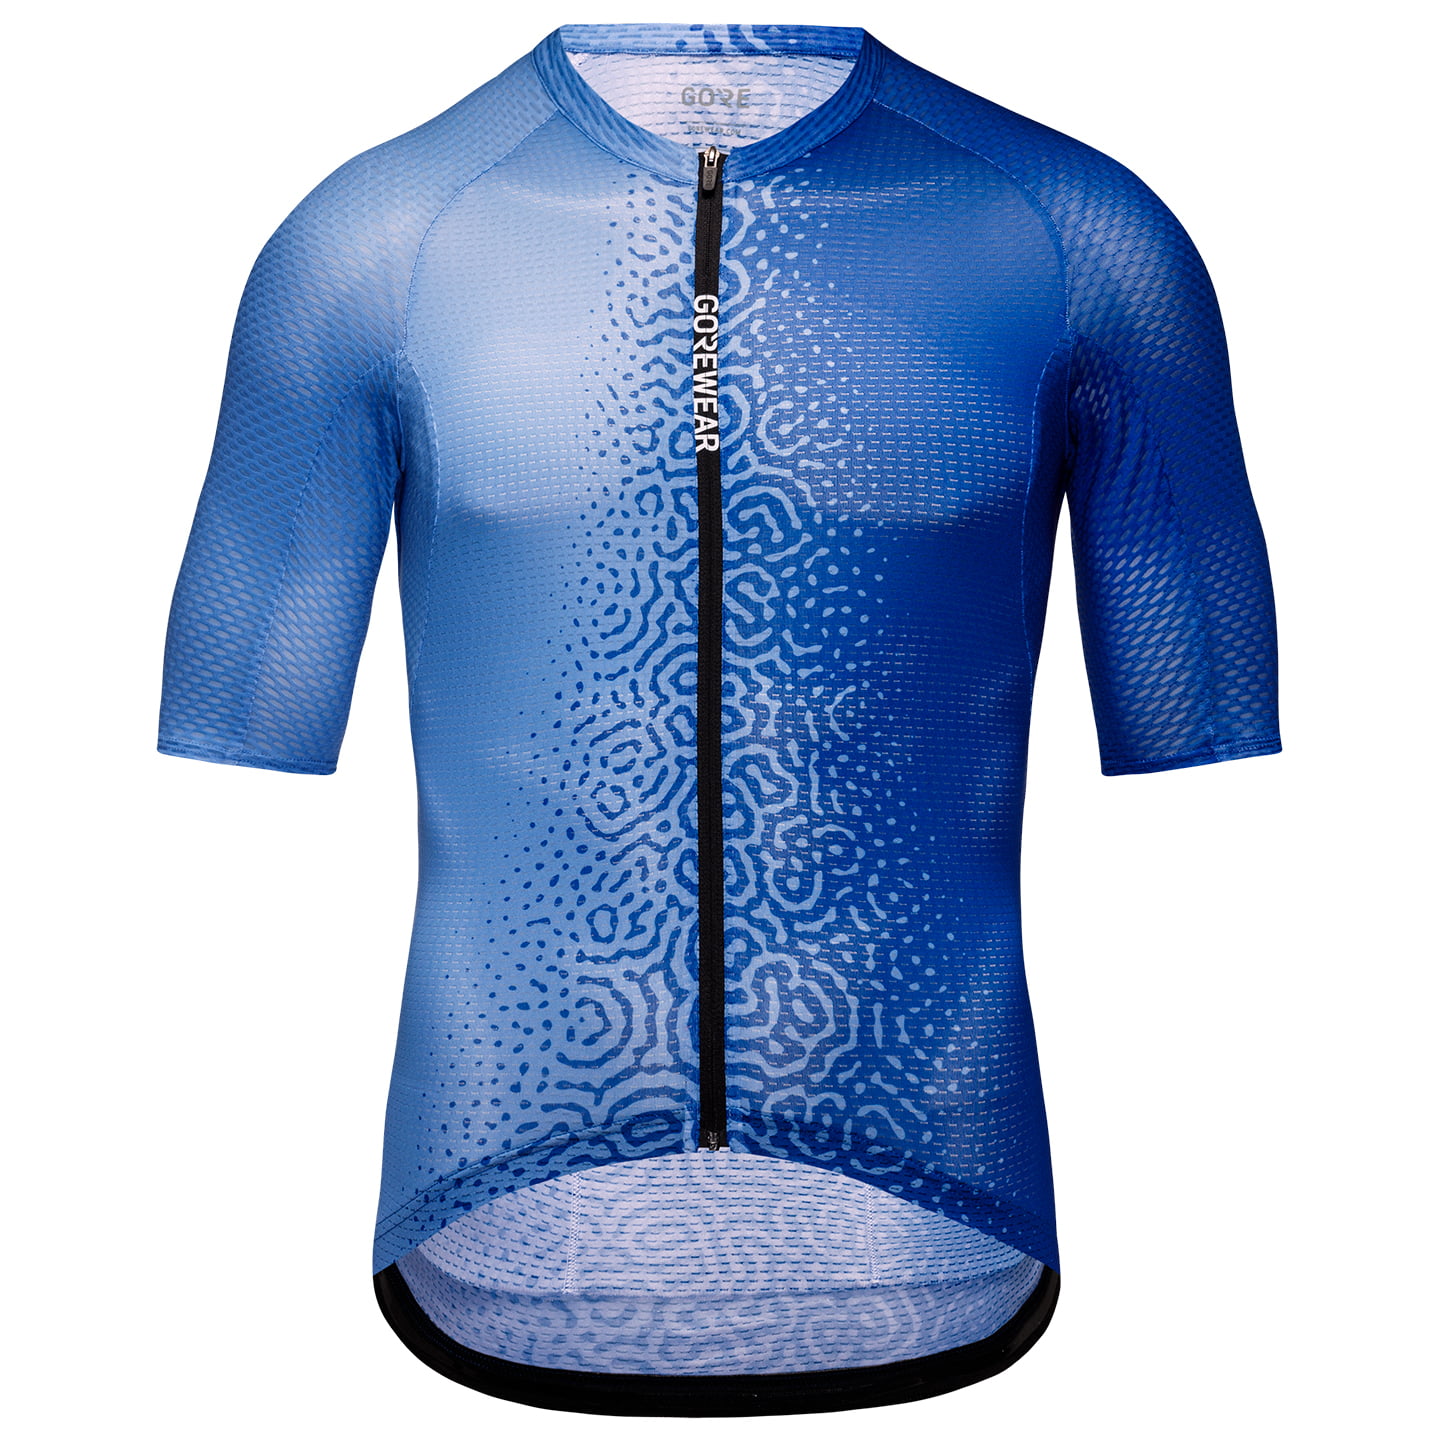 Spinshift Breathe Short Sleeve Jersey Short Sleeve Jersey, for men, size M, Cycling jersey, Cycling clothing